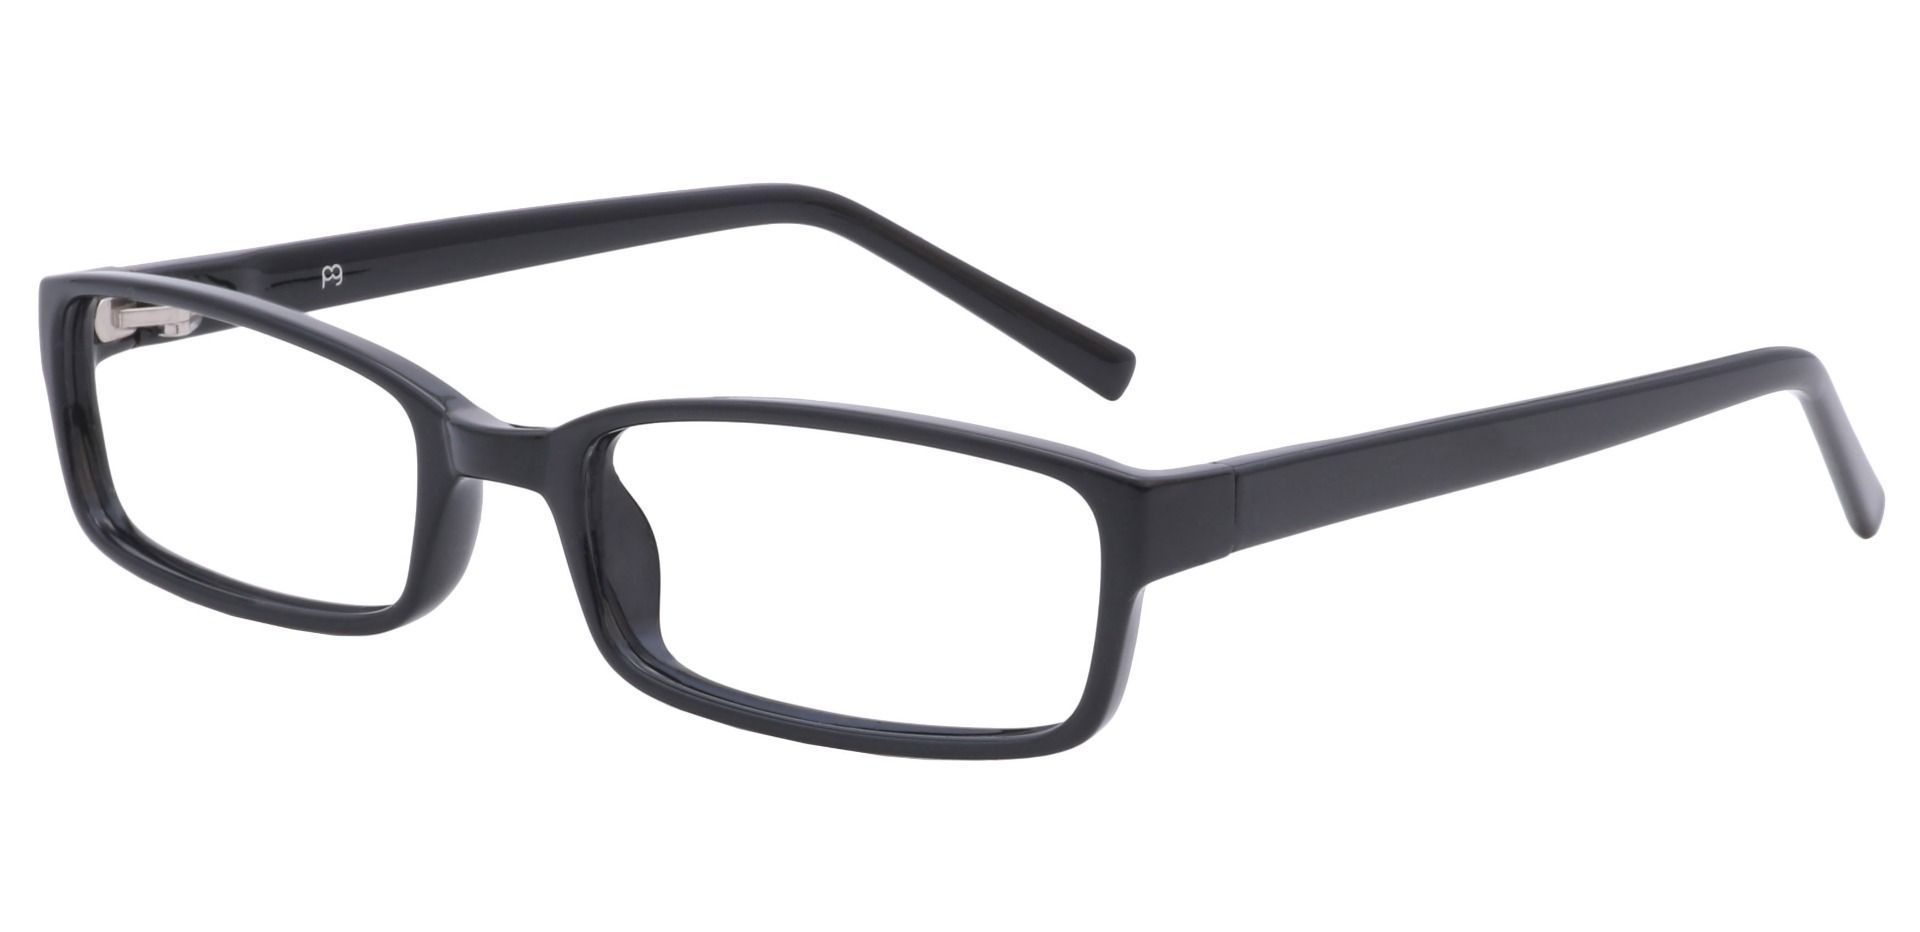 Sanford Rectangle Reading Glasses - Black